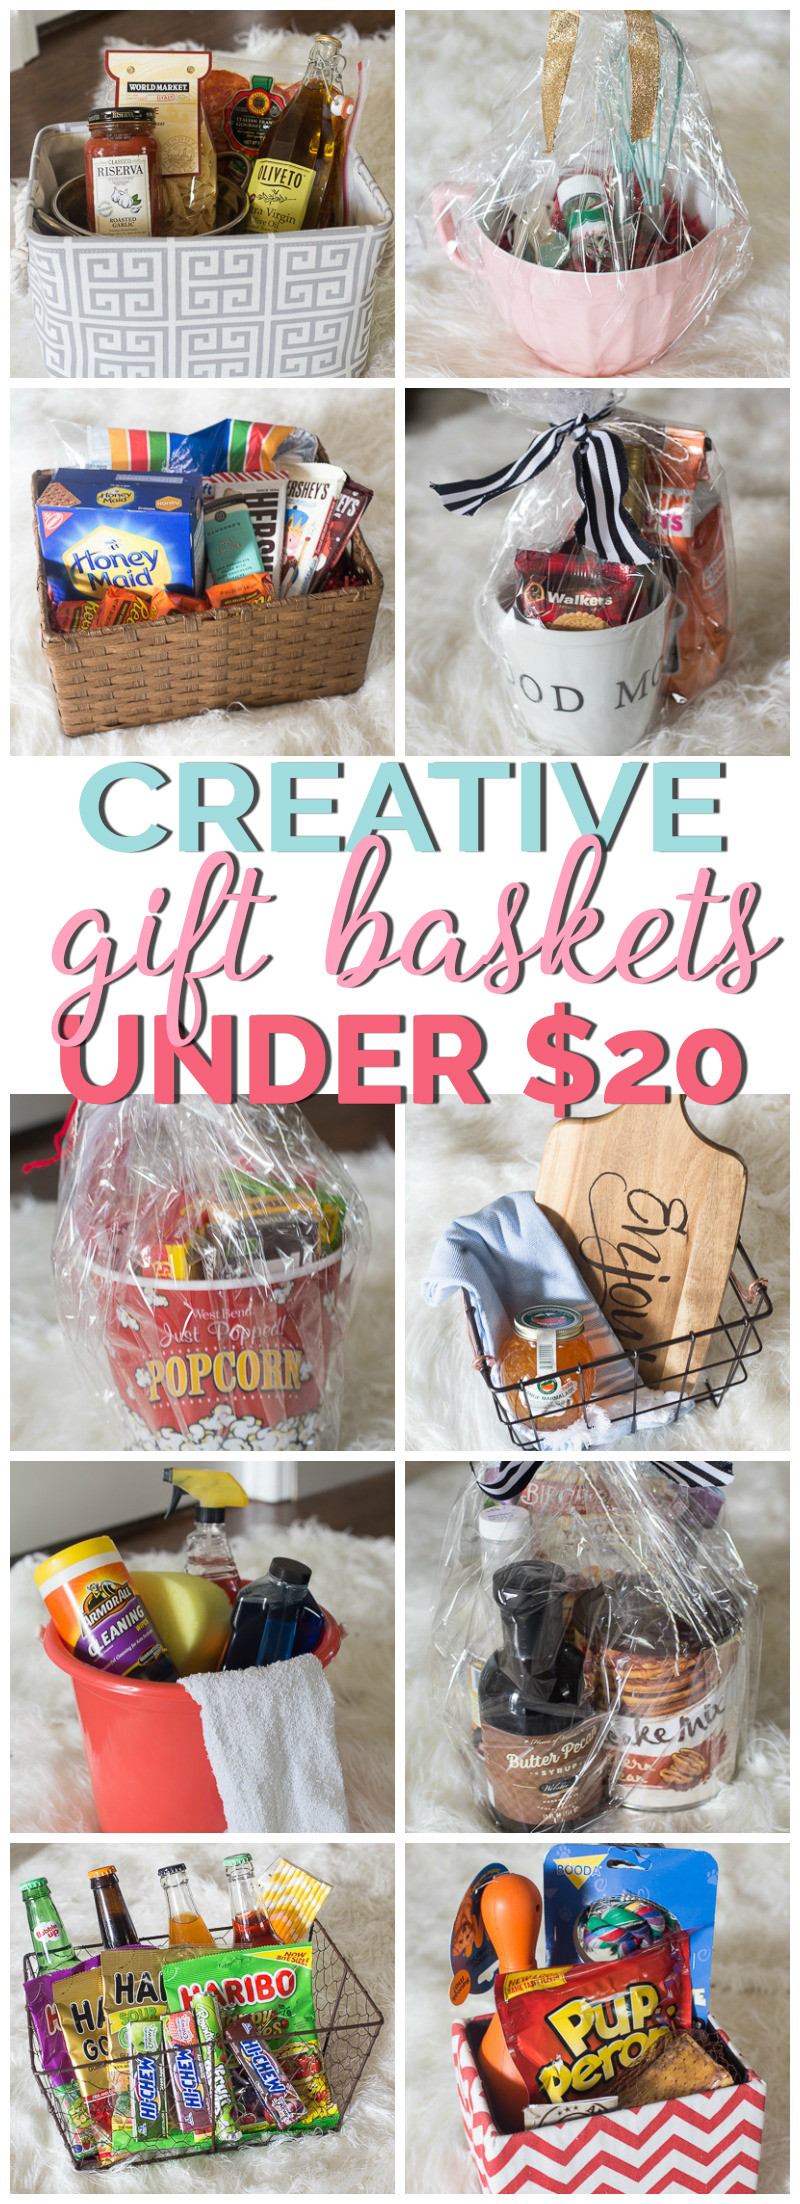 Gift Basket Ideas
 Creative Gift Basket Ideas Under $20